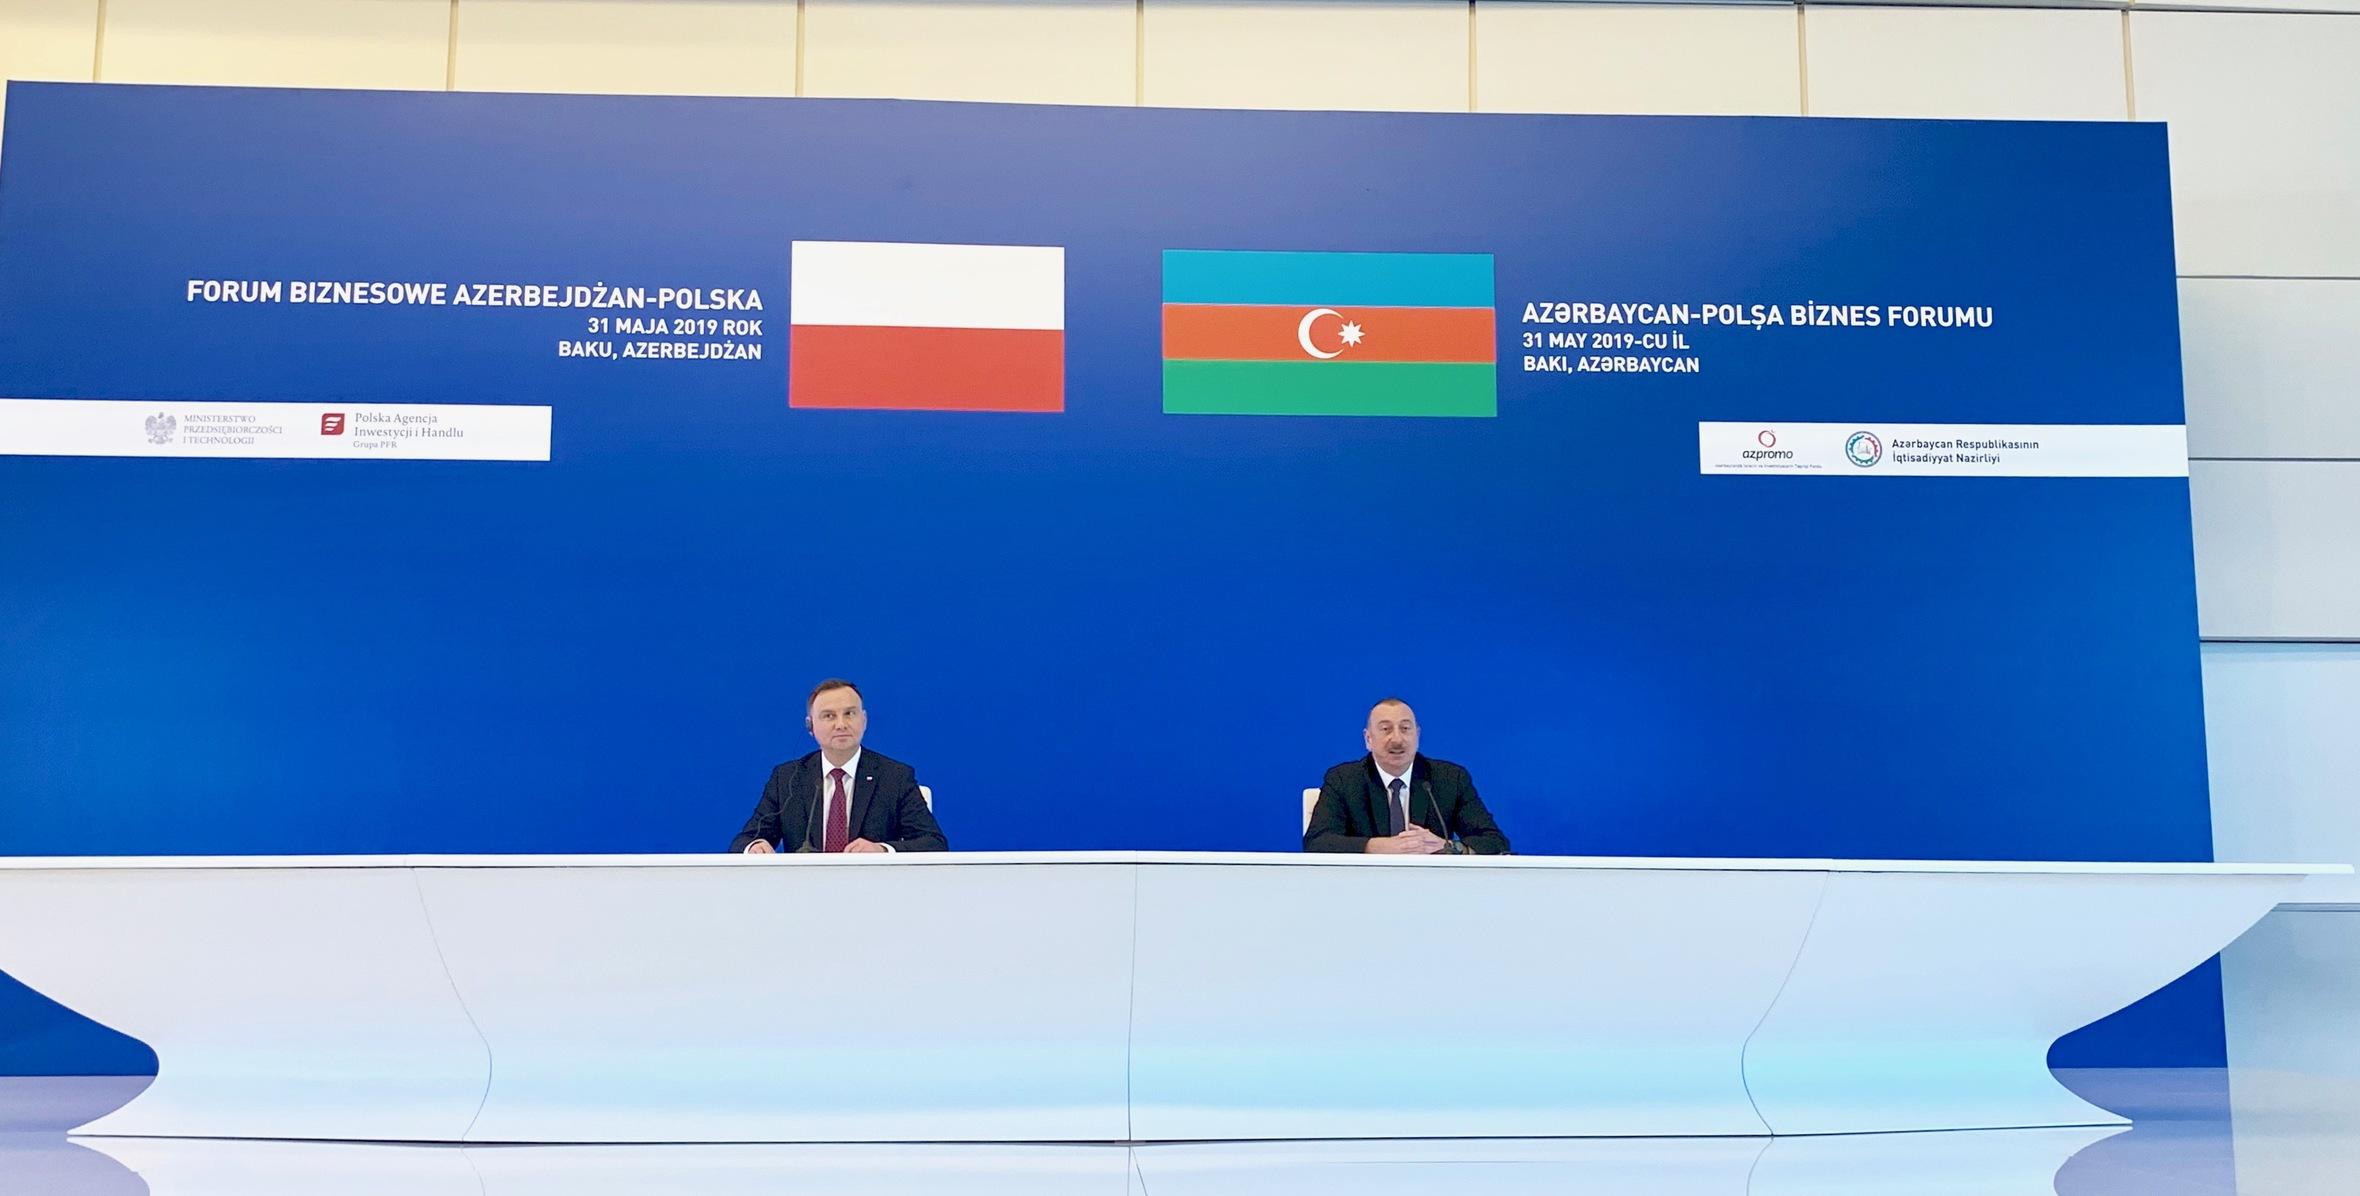 Azərbaycan-Polşa biznes forumunda İlham Əliyevin nitqi